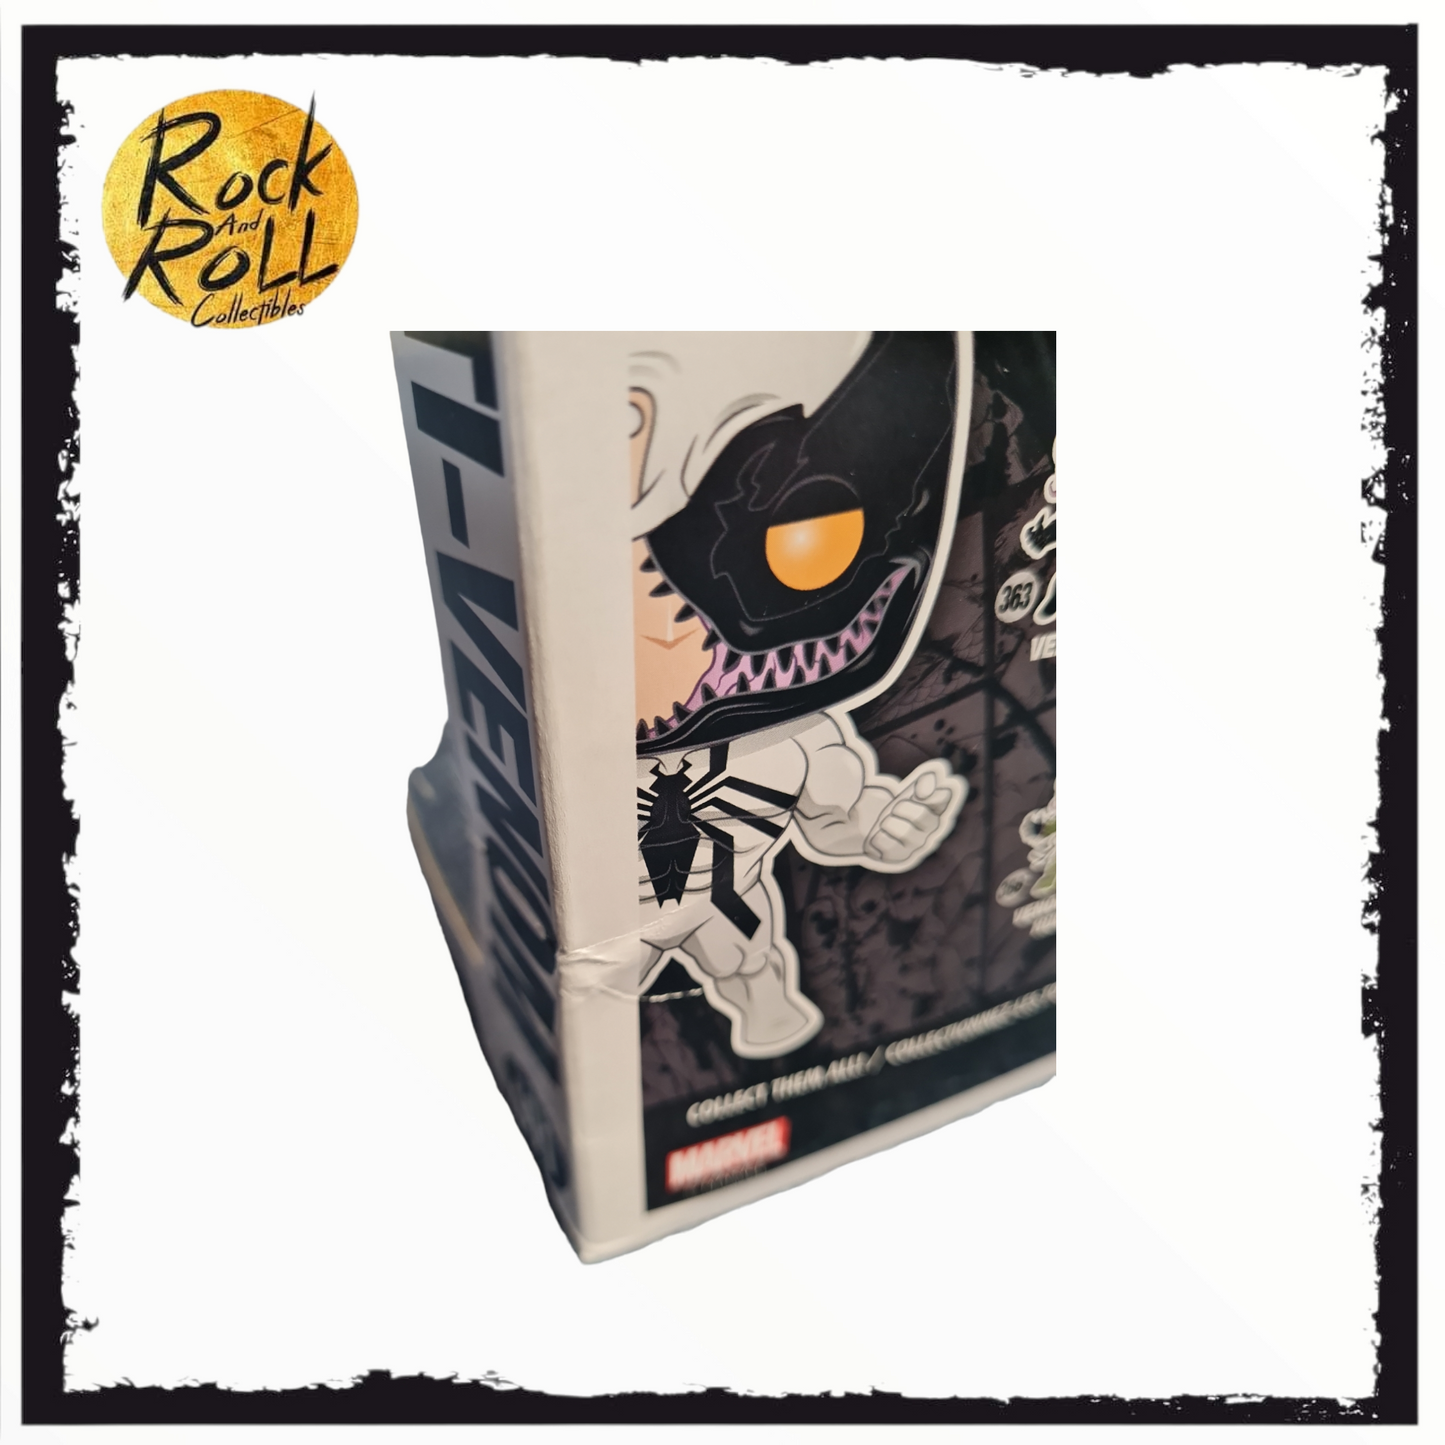 Box Damage - Venom - Anti-Venom Glow In The Dark Funko Pop! #402 Box Lunch Exclusive